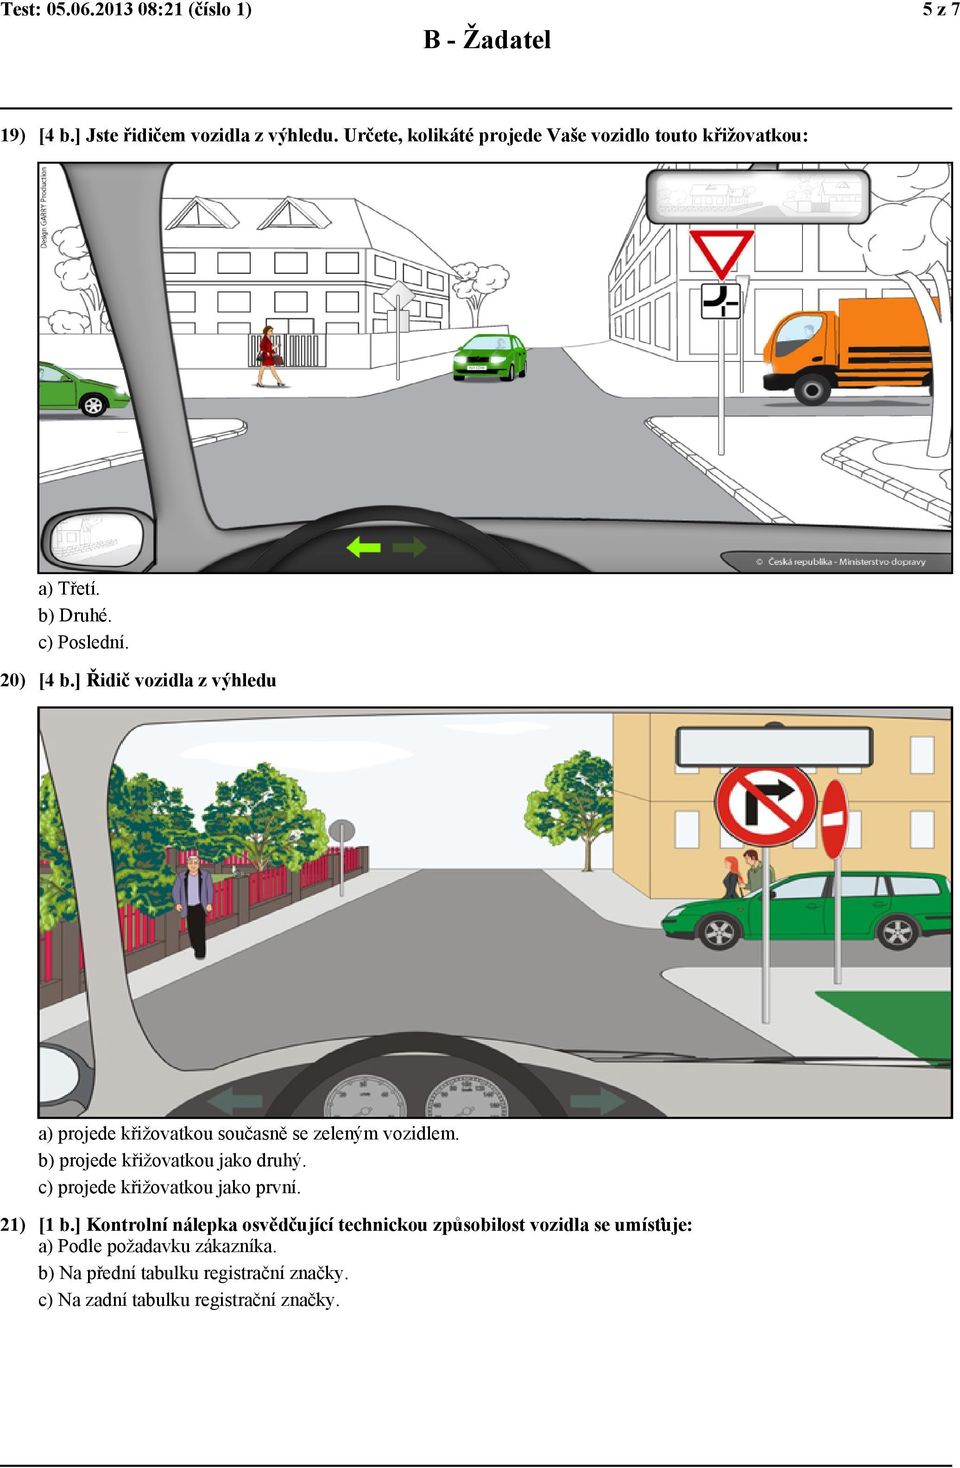 ] Řidič vozidla z výhledu a) projede křižovatkou současně se zeleným vozidlem. b) projede křižovatkou jako druhý.